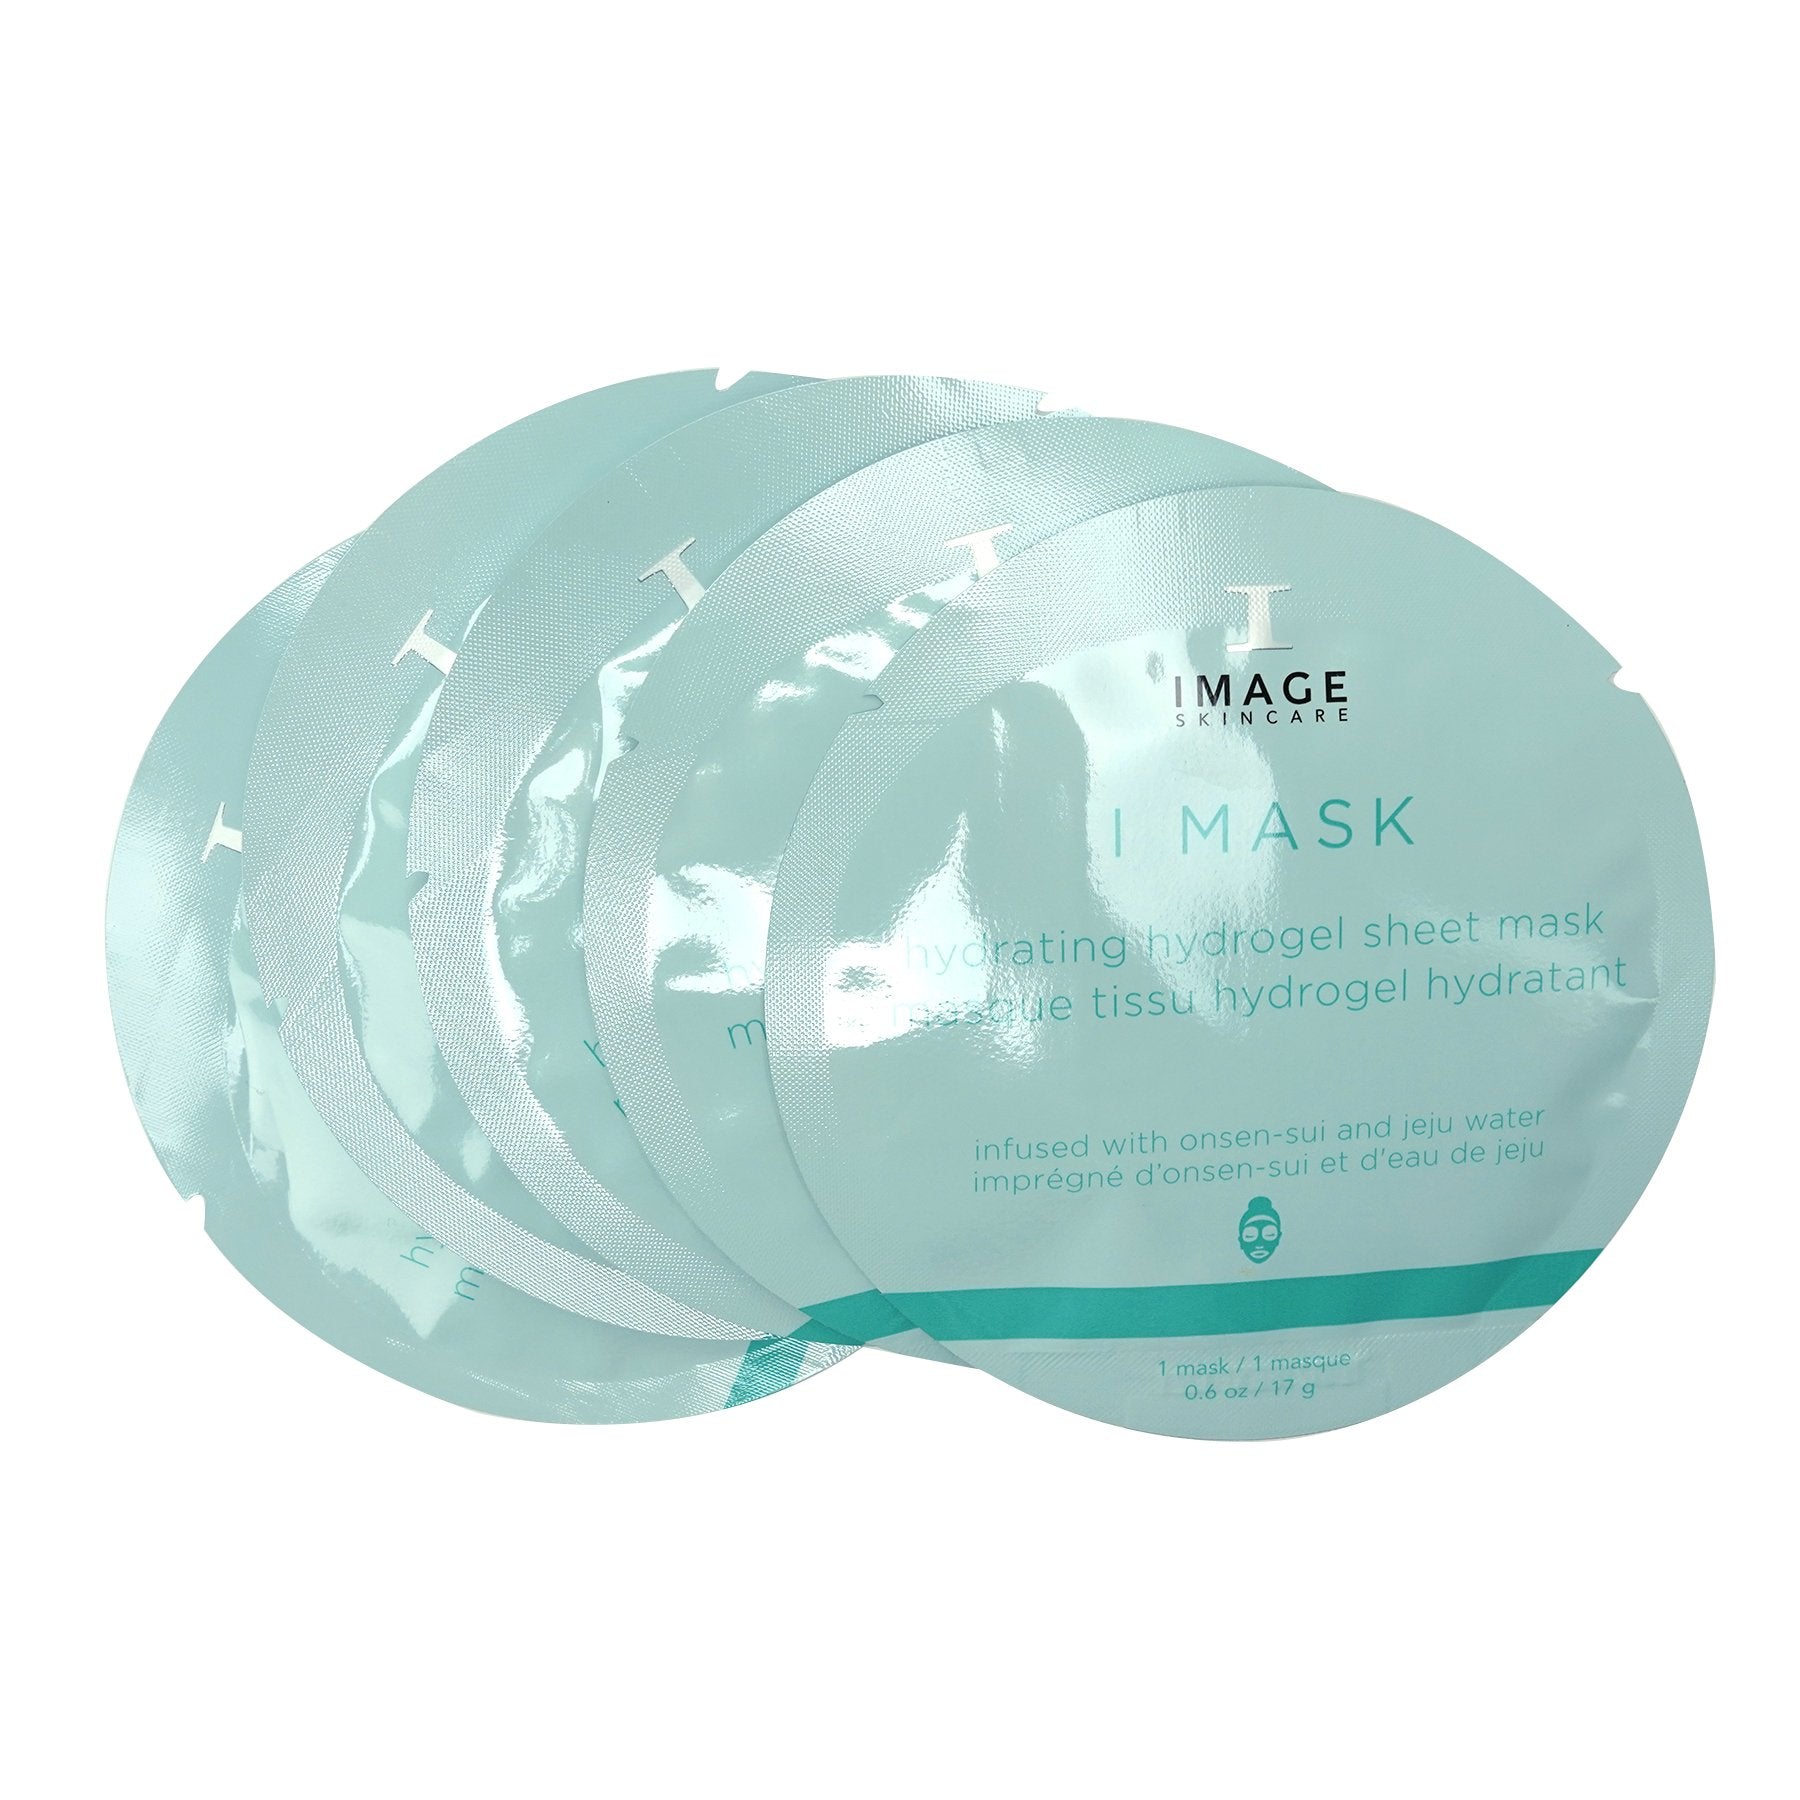 Image I MASK Hydrating Hydrogel Sheet Mask 5PK